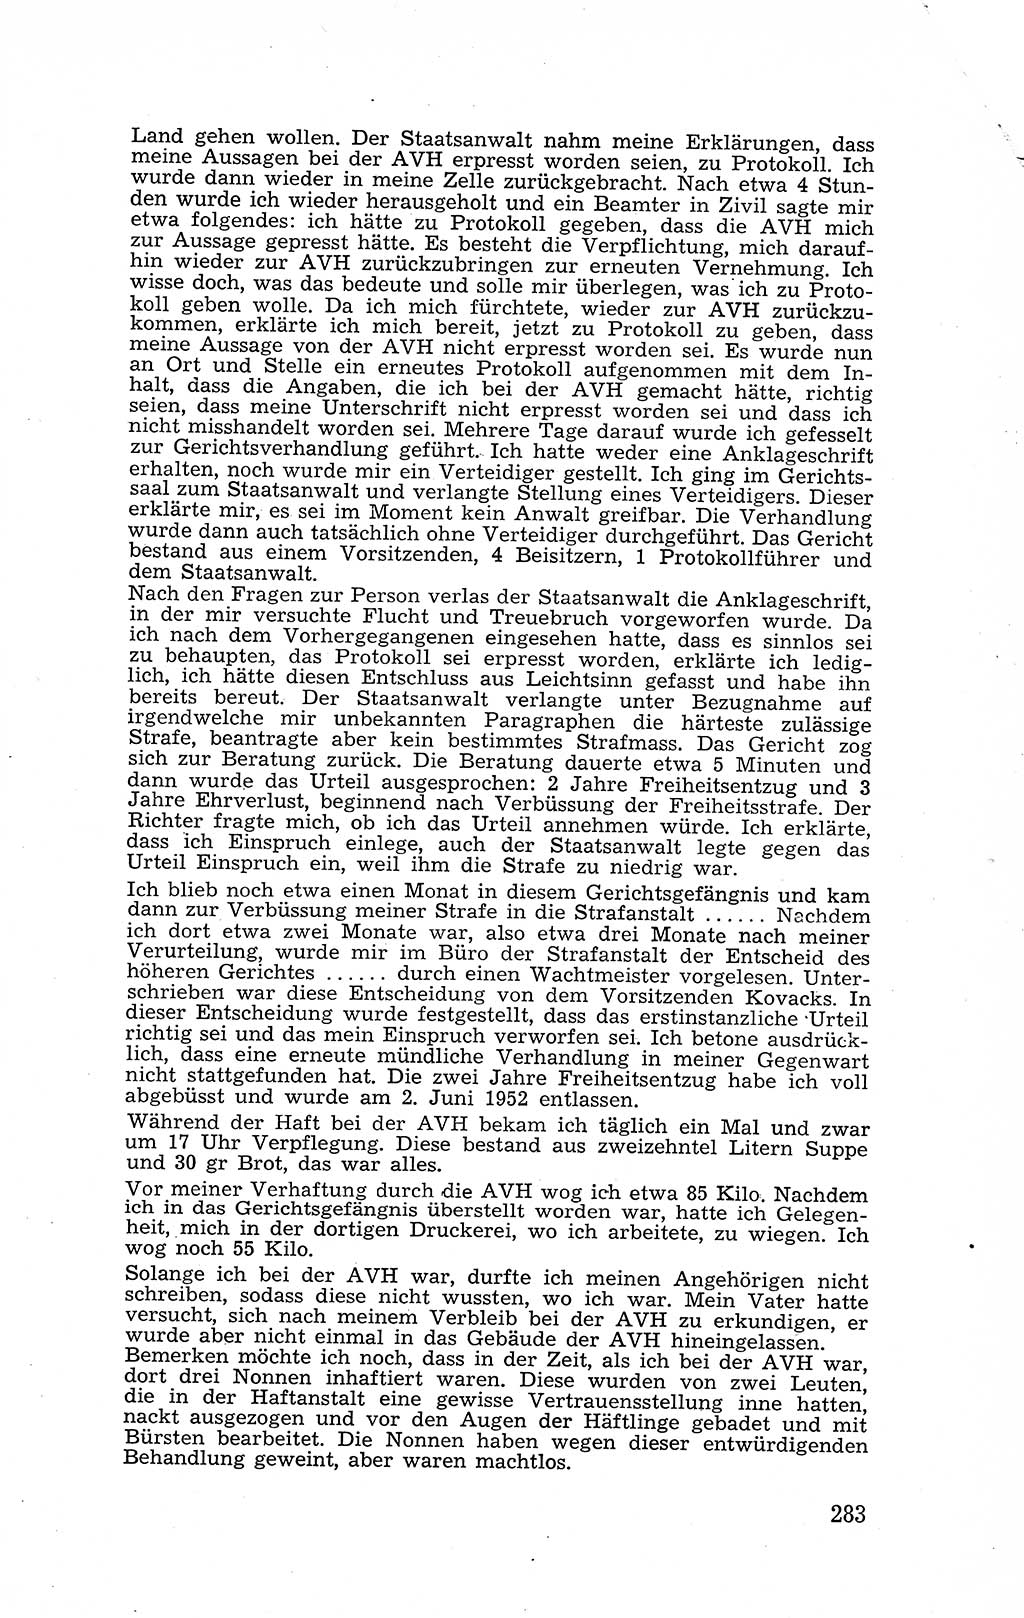 Recht in Fesseln, Dokumente, Internationale Juristen-Kommission [Bundesrepublik Deutschland (BRD)] 1955, Seite 283 (R. Dok. IJK BRD 1955, S. 283)